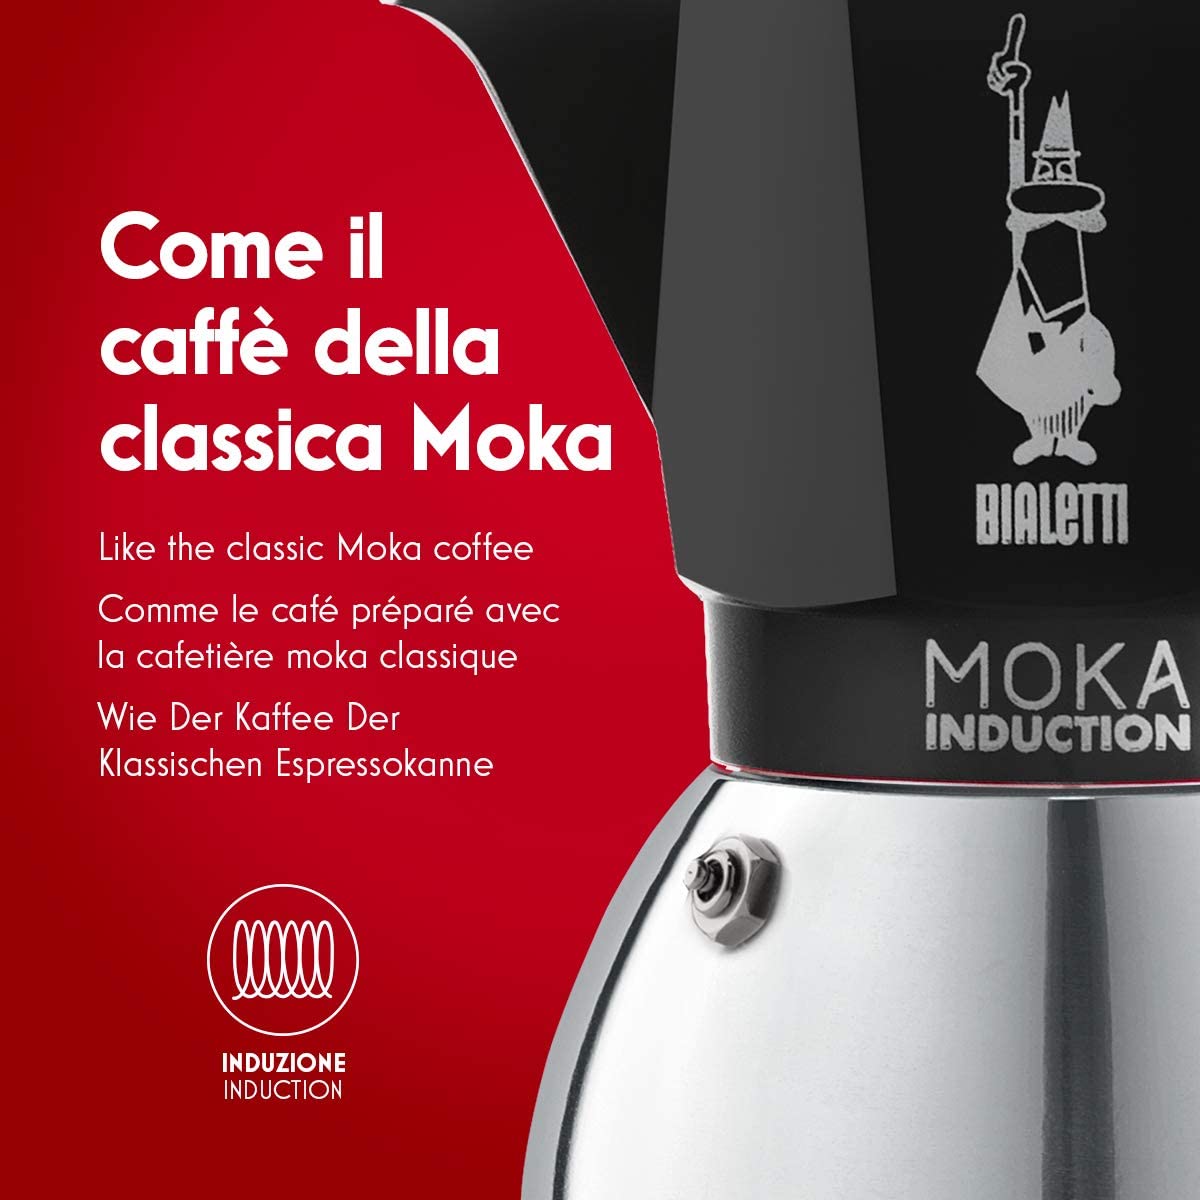 Третье дополнительное изображение для товара Гейзерная кофеварка Bialetti Moka Induction NEW 6936 для индукционных плит (6 порций, 280 мл), черная